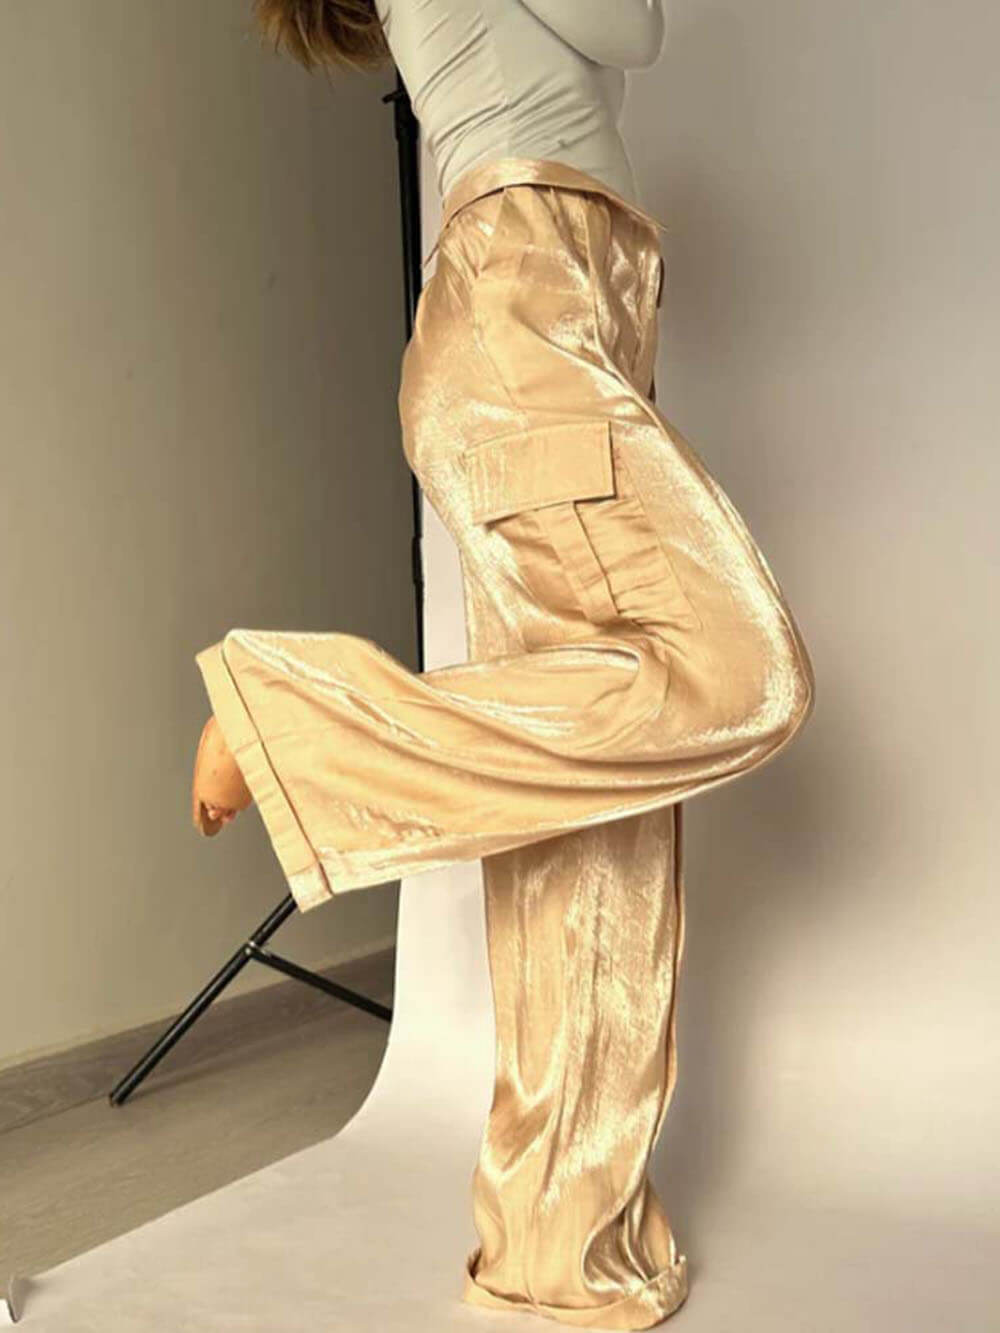 Gouden jaren glitterstof broek met trekkoord in de taille en wijde pijpen